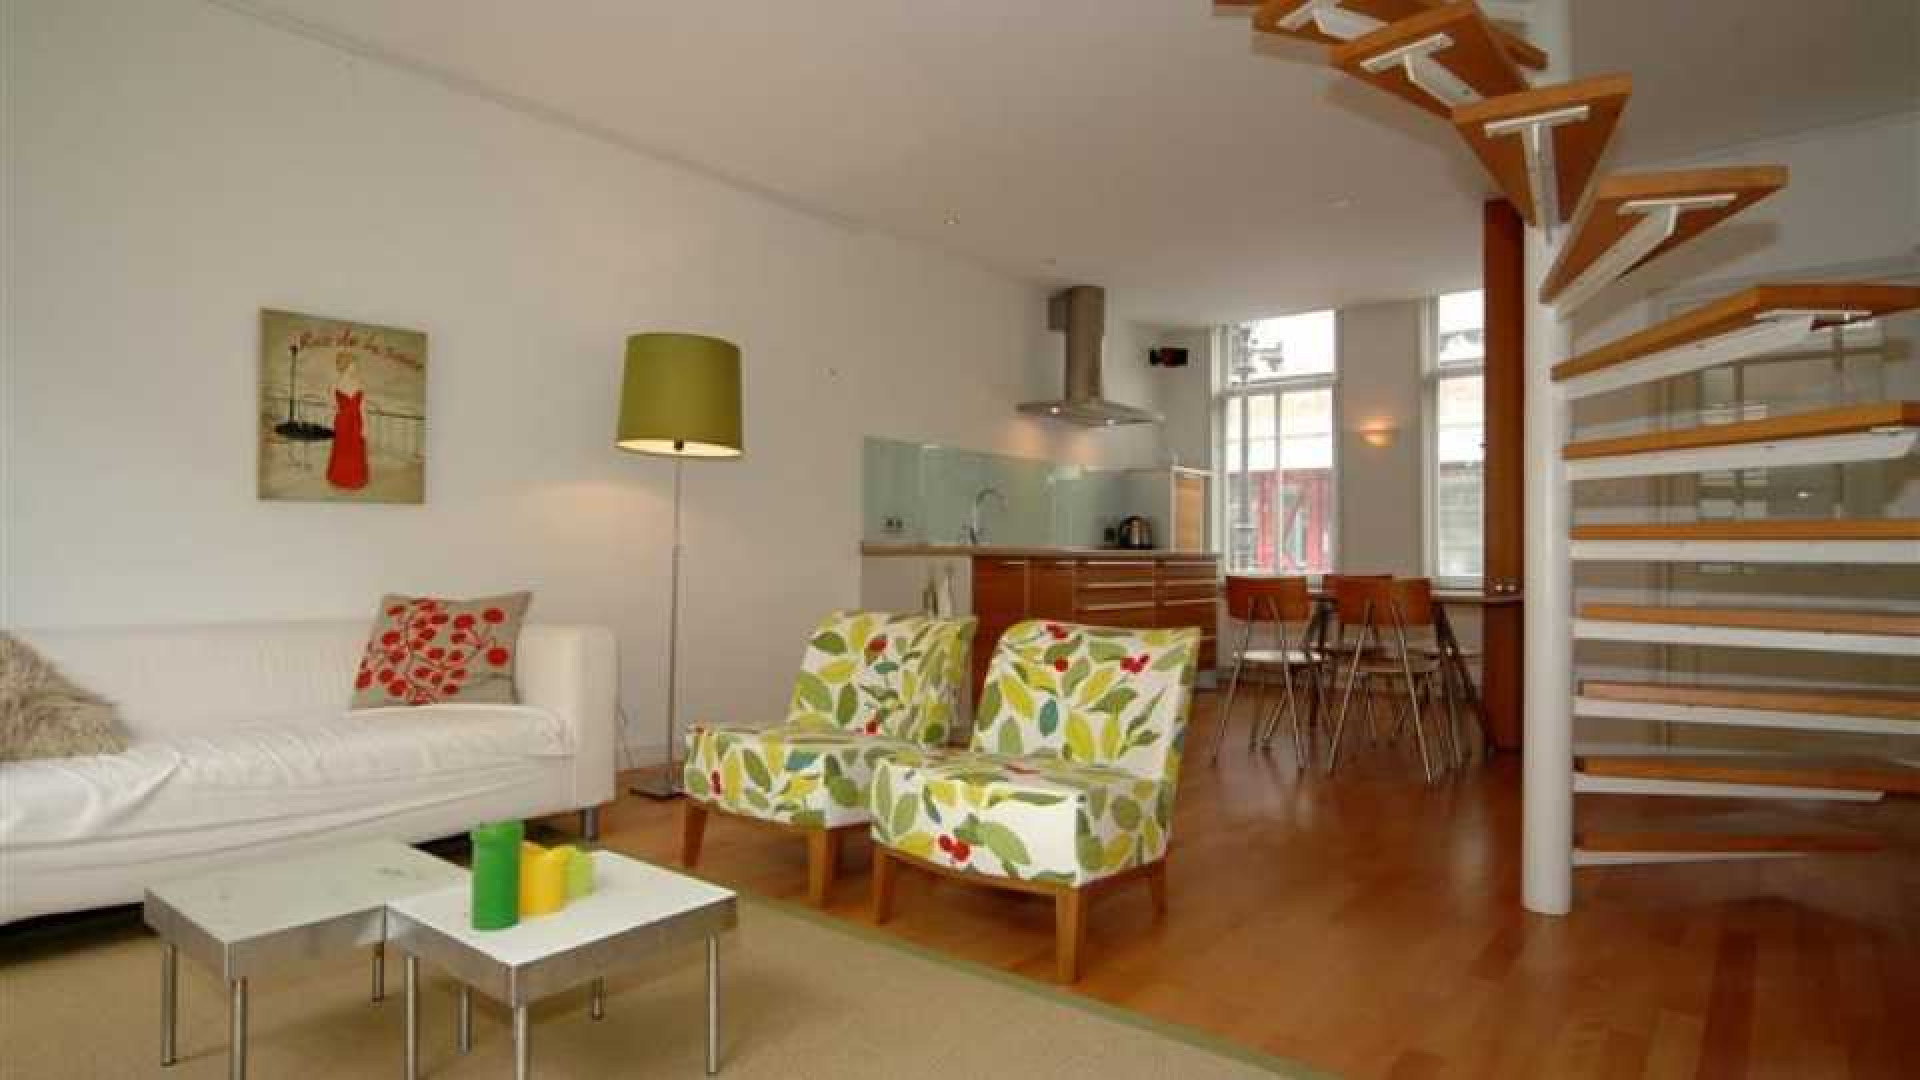 Frits Wester huurt appartement in Voorburg in de buurt van zijn ex!, Zie foto's 4